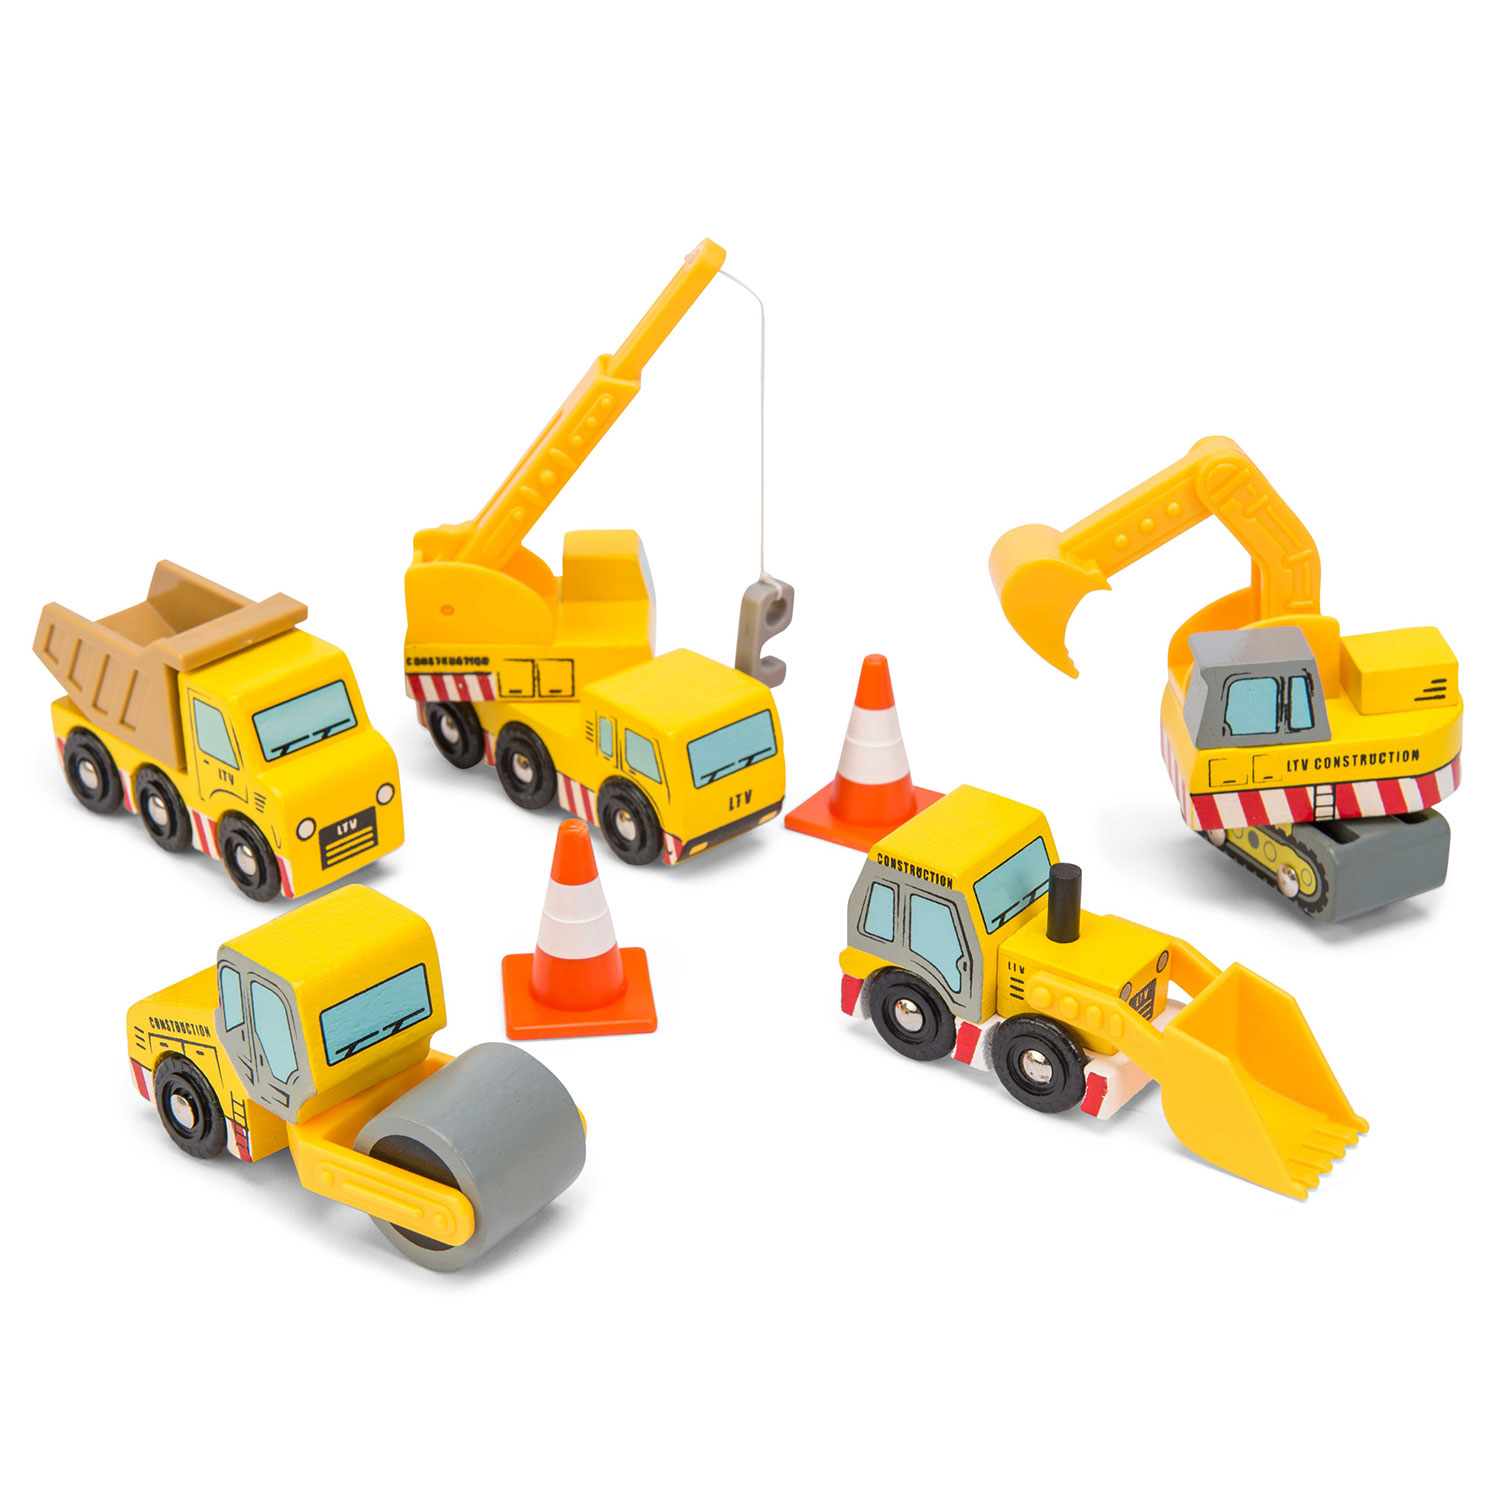 Baufahrzeuge / Construction Set - 2021